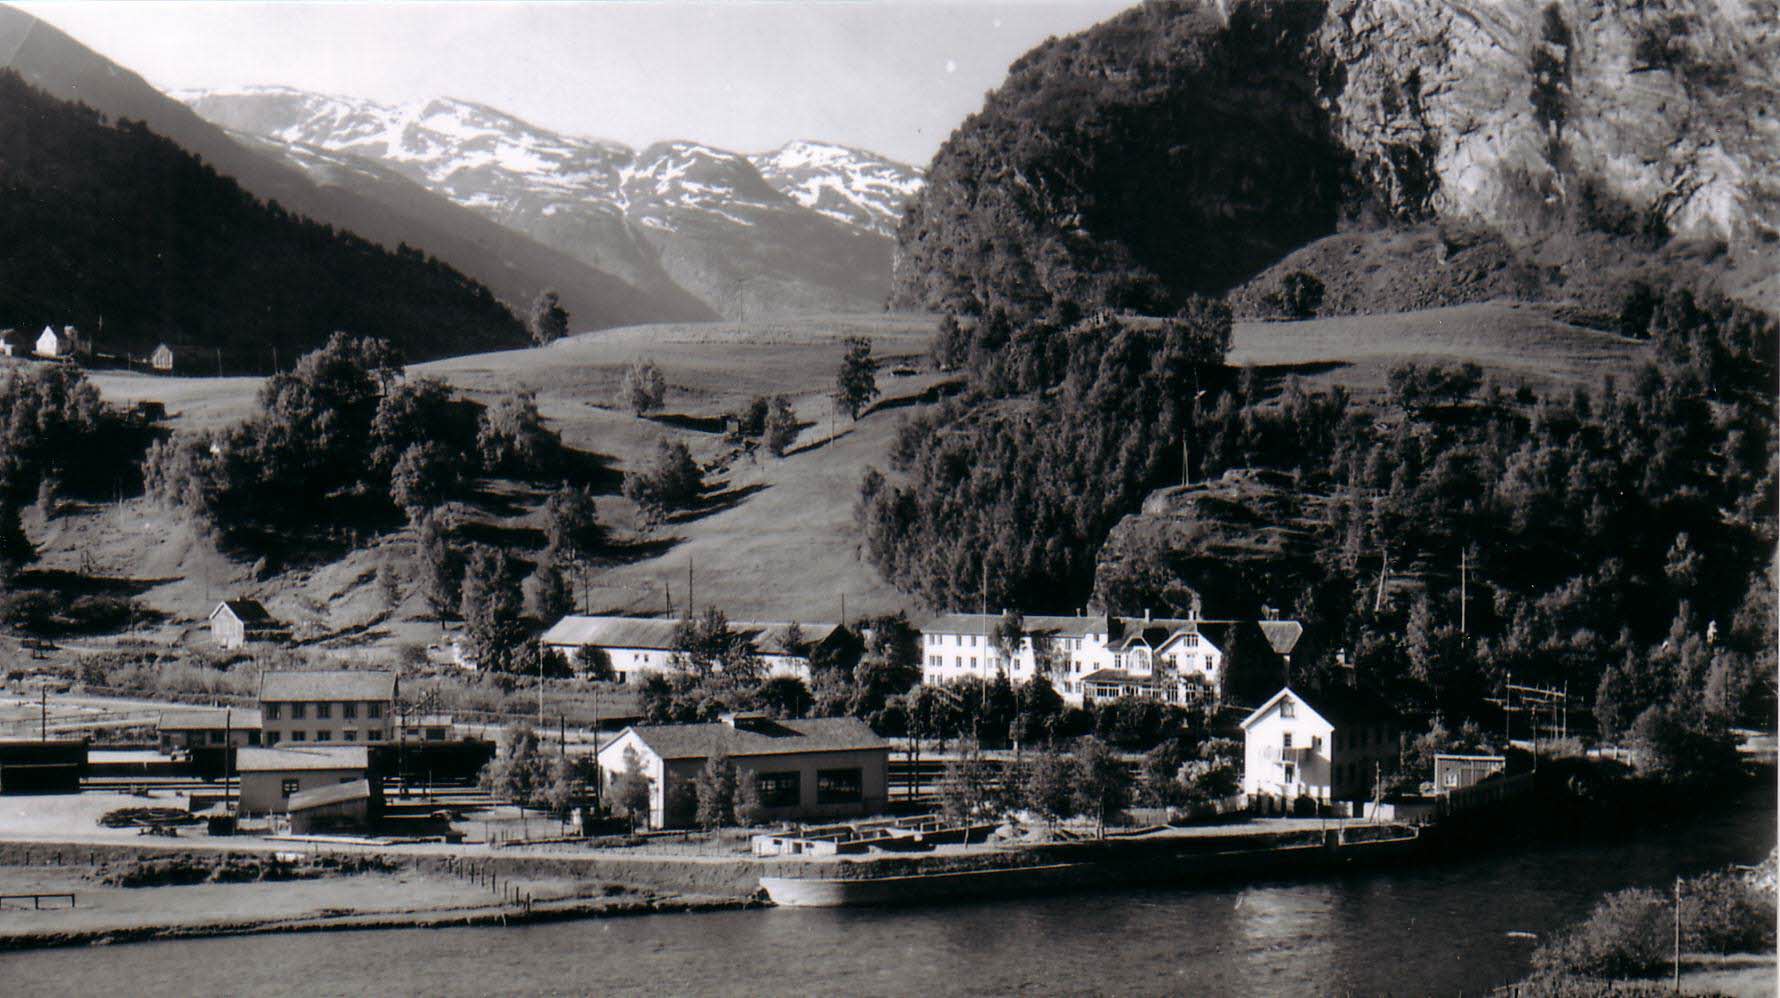 Une vieille photo en noir et blanc de Flåm. Un cargo à quai, le Fretheim Hotel et le mont Fretheimshaugen.